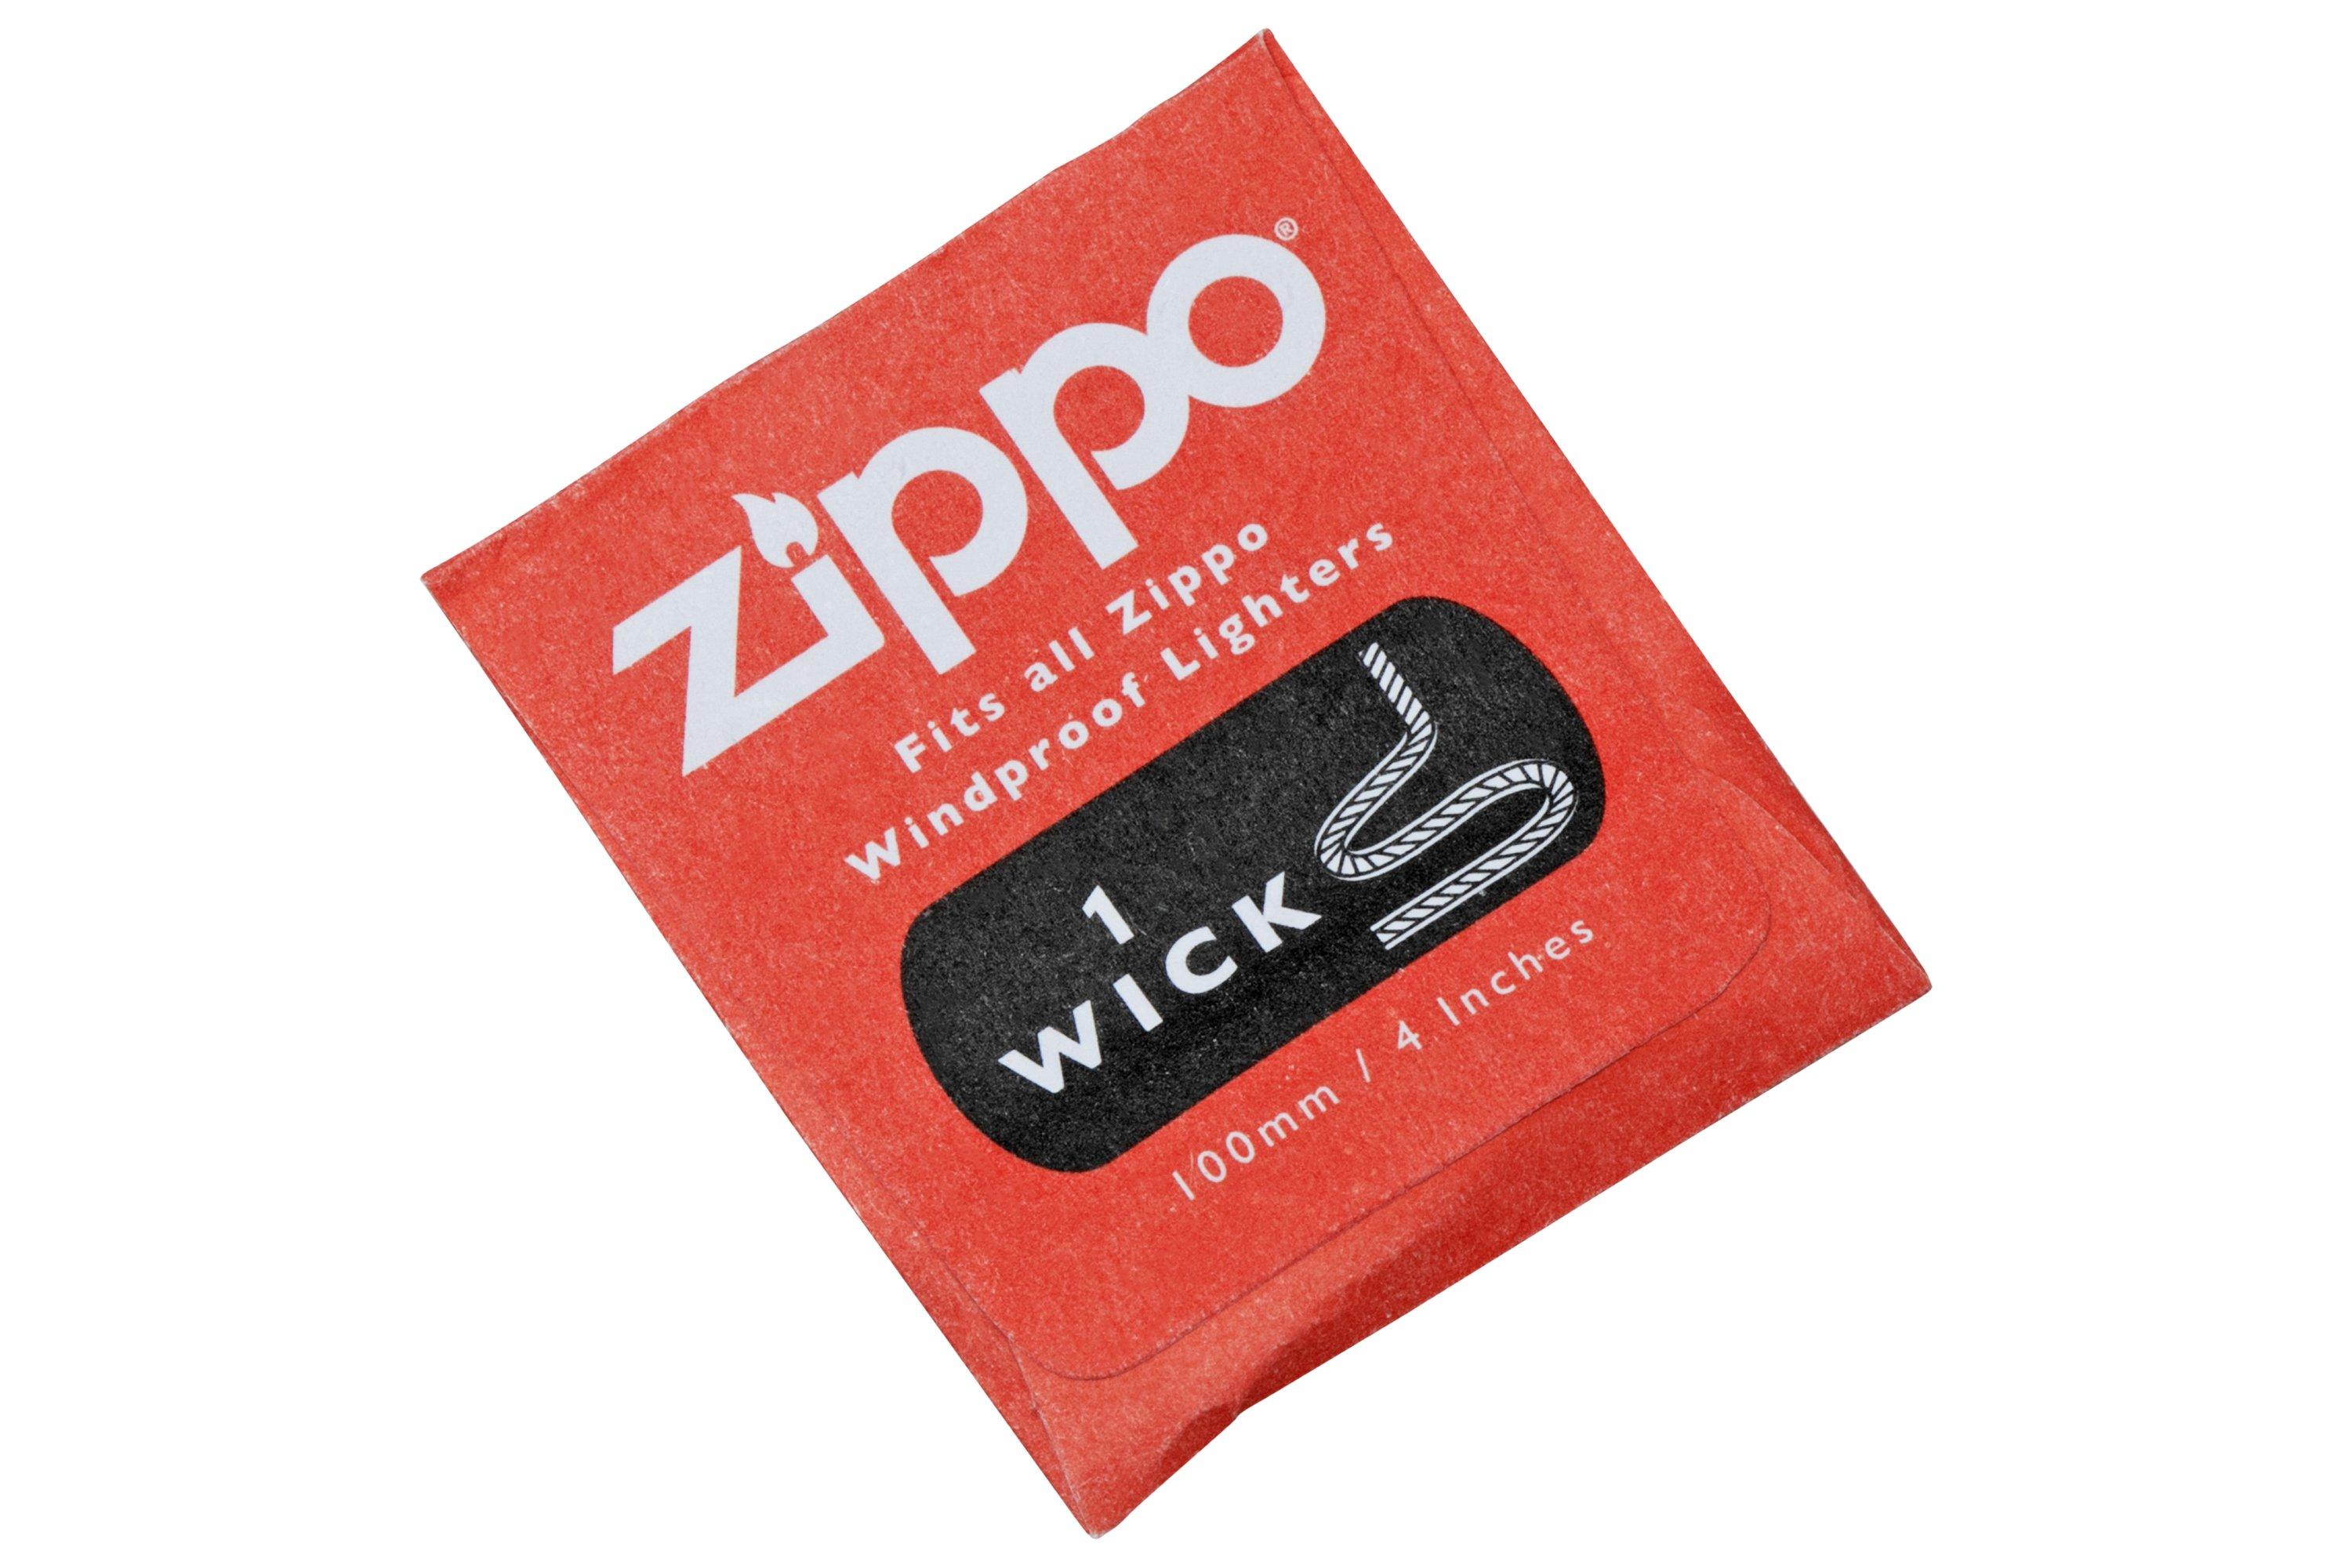 Zippo 2425G Wick Card Single Unit, mèche à Zippo  Achetez à prix  avantageux chez knivesandtools.be